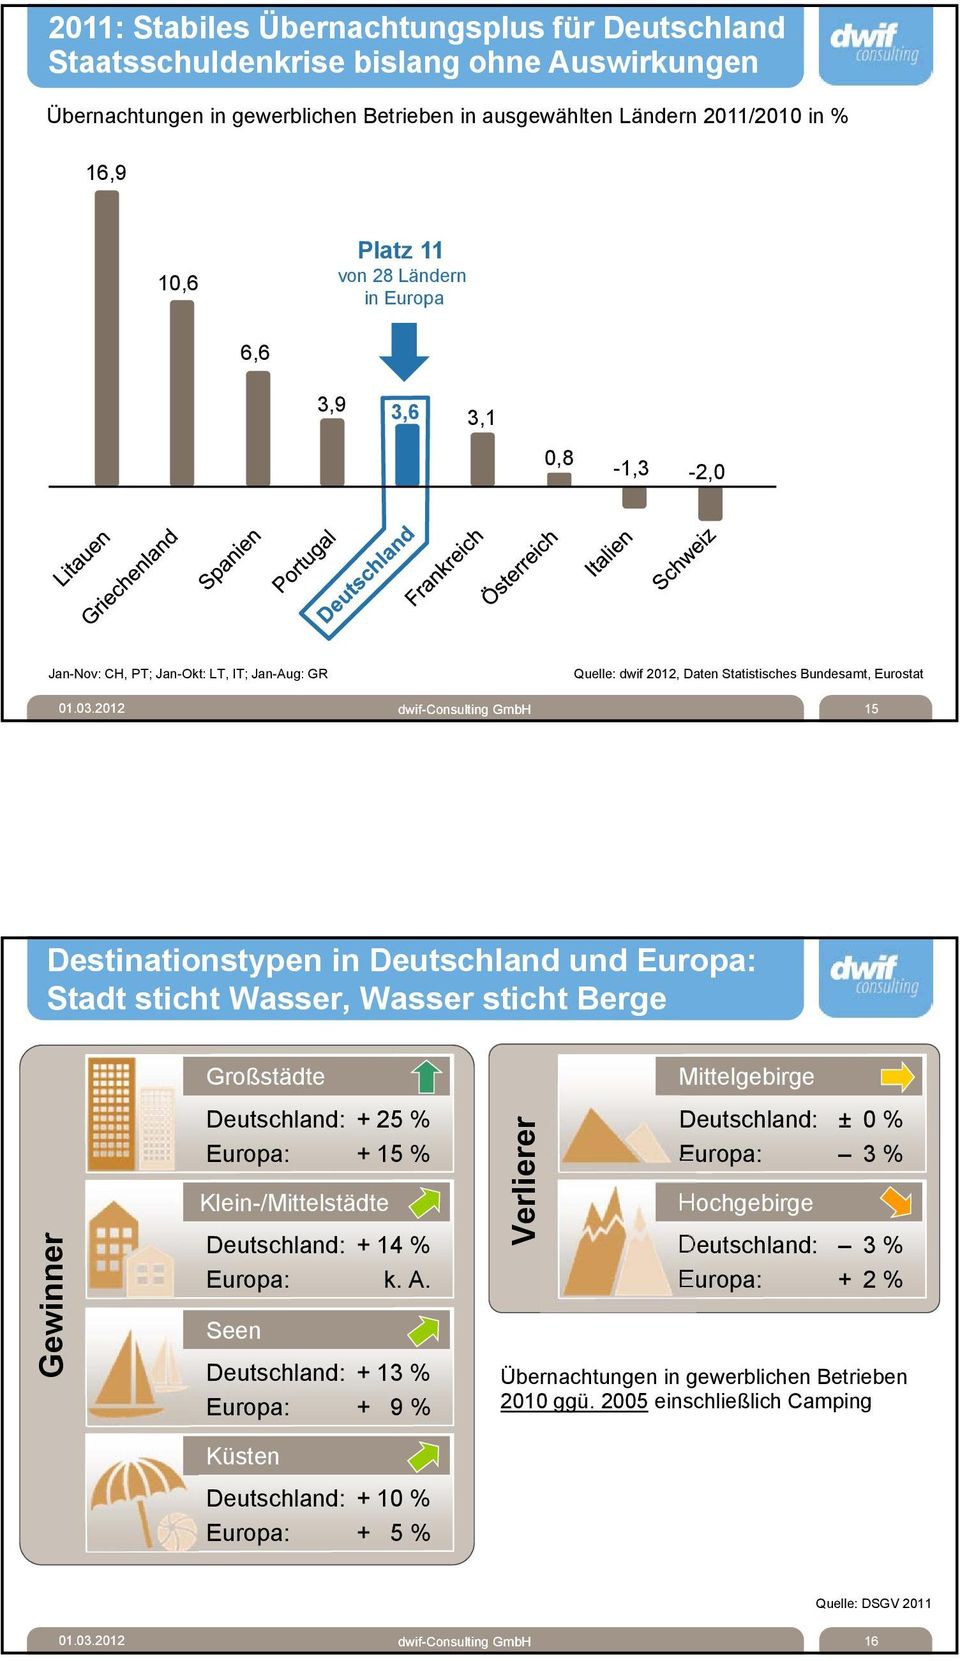 2012 dwif-consulting GmbH 15 Destinationstypen in Deutschland und Europa: Stadt sticht Wasser, Wasser sticht Berge Gewinner Großstädte Deutschland: + 25 % Europa: + 15 % Klein-/Mittelstädte